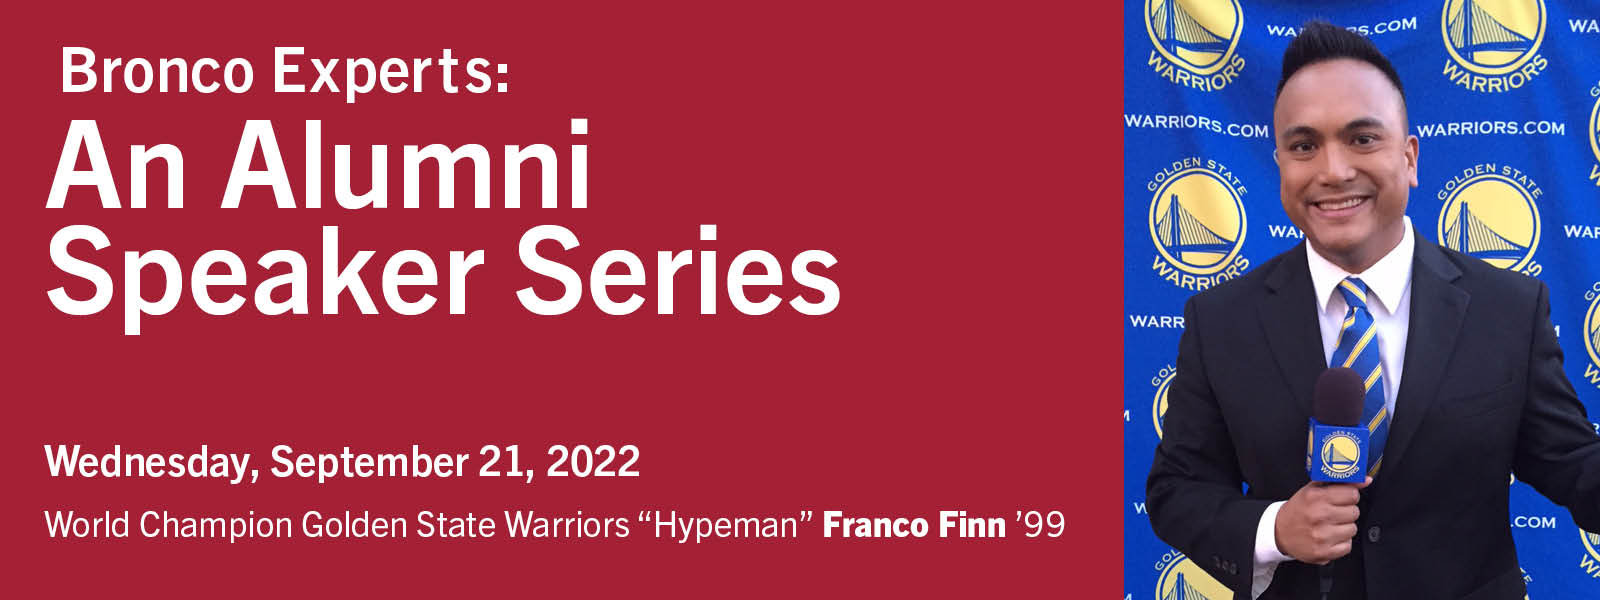 Bronco Expert Series - Franco Finn 